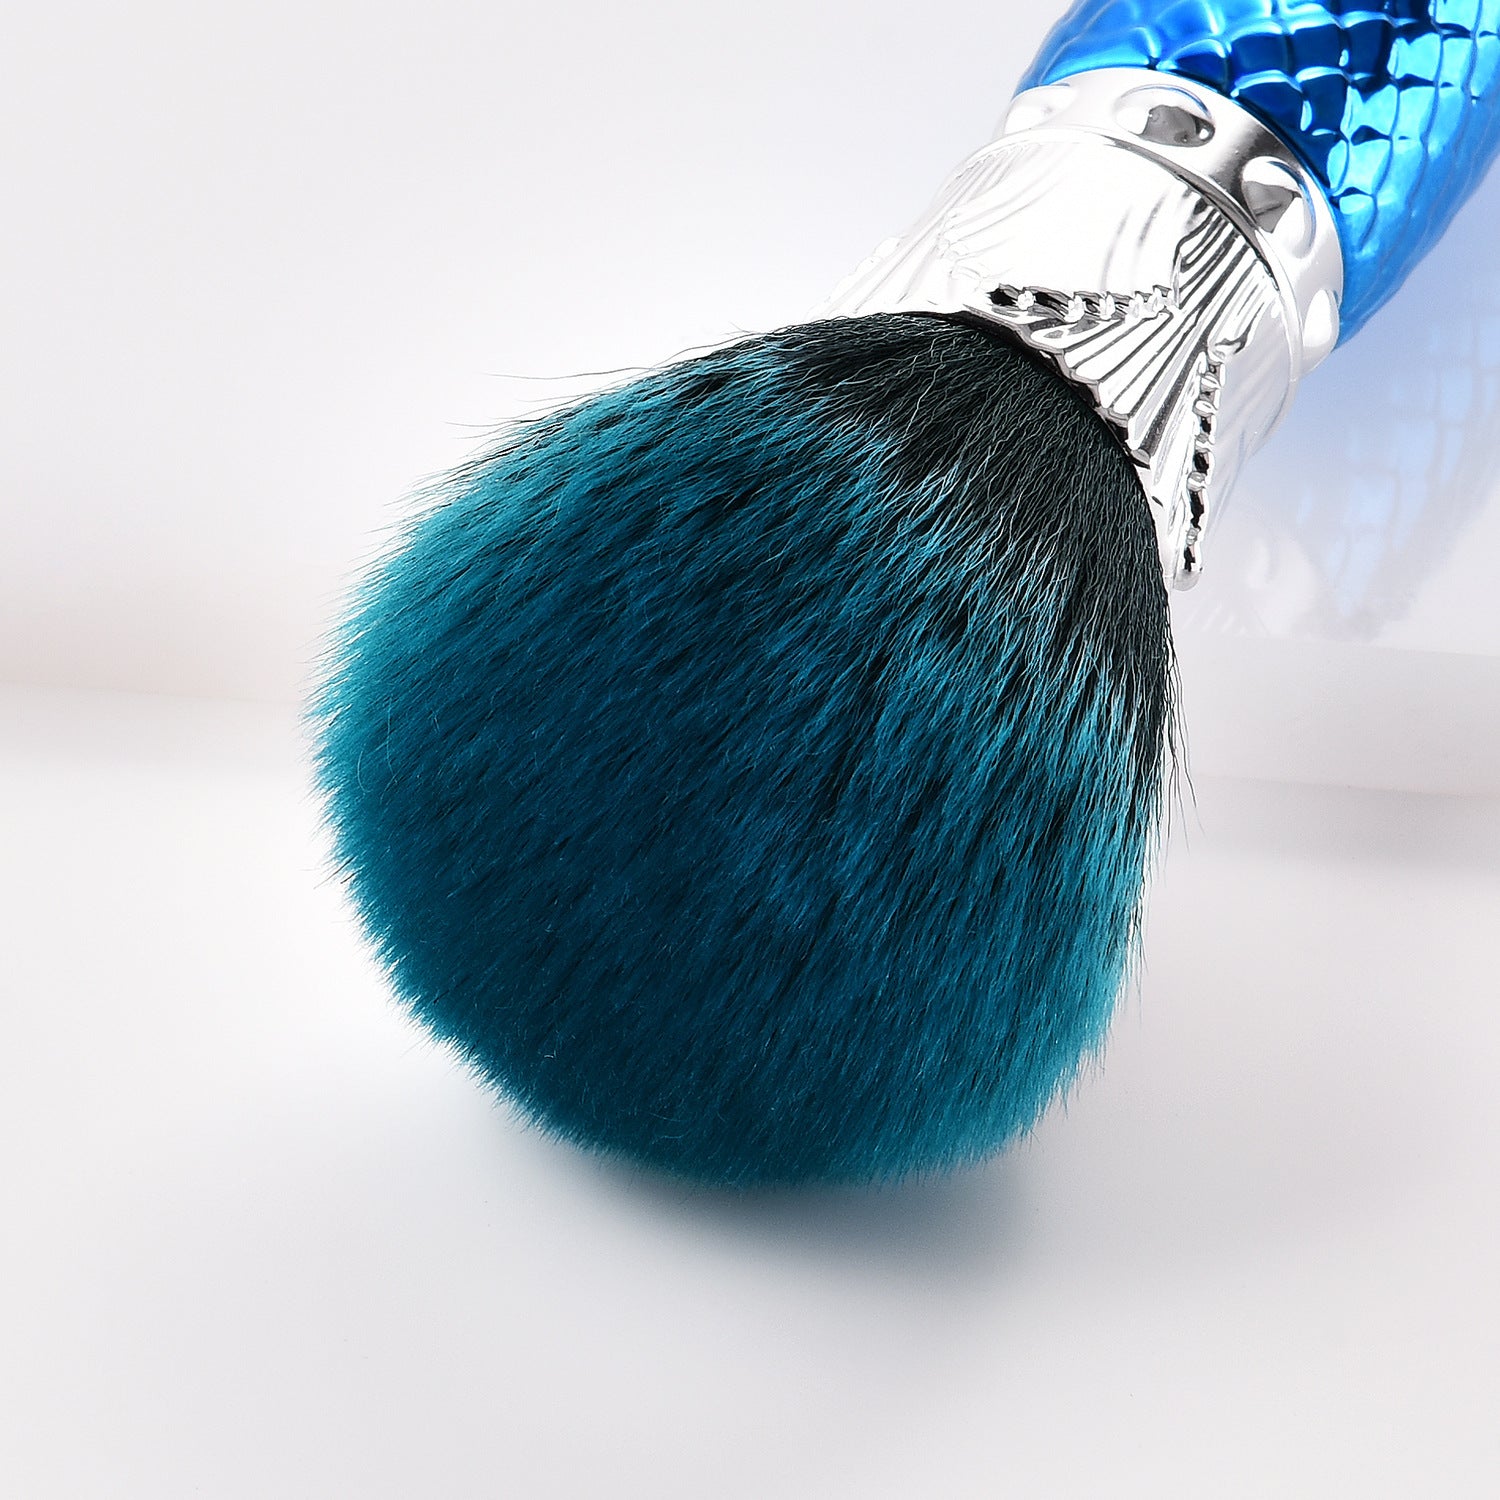 Single makeup brush makeup tool blue